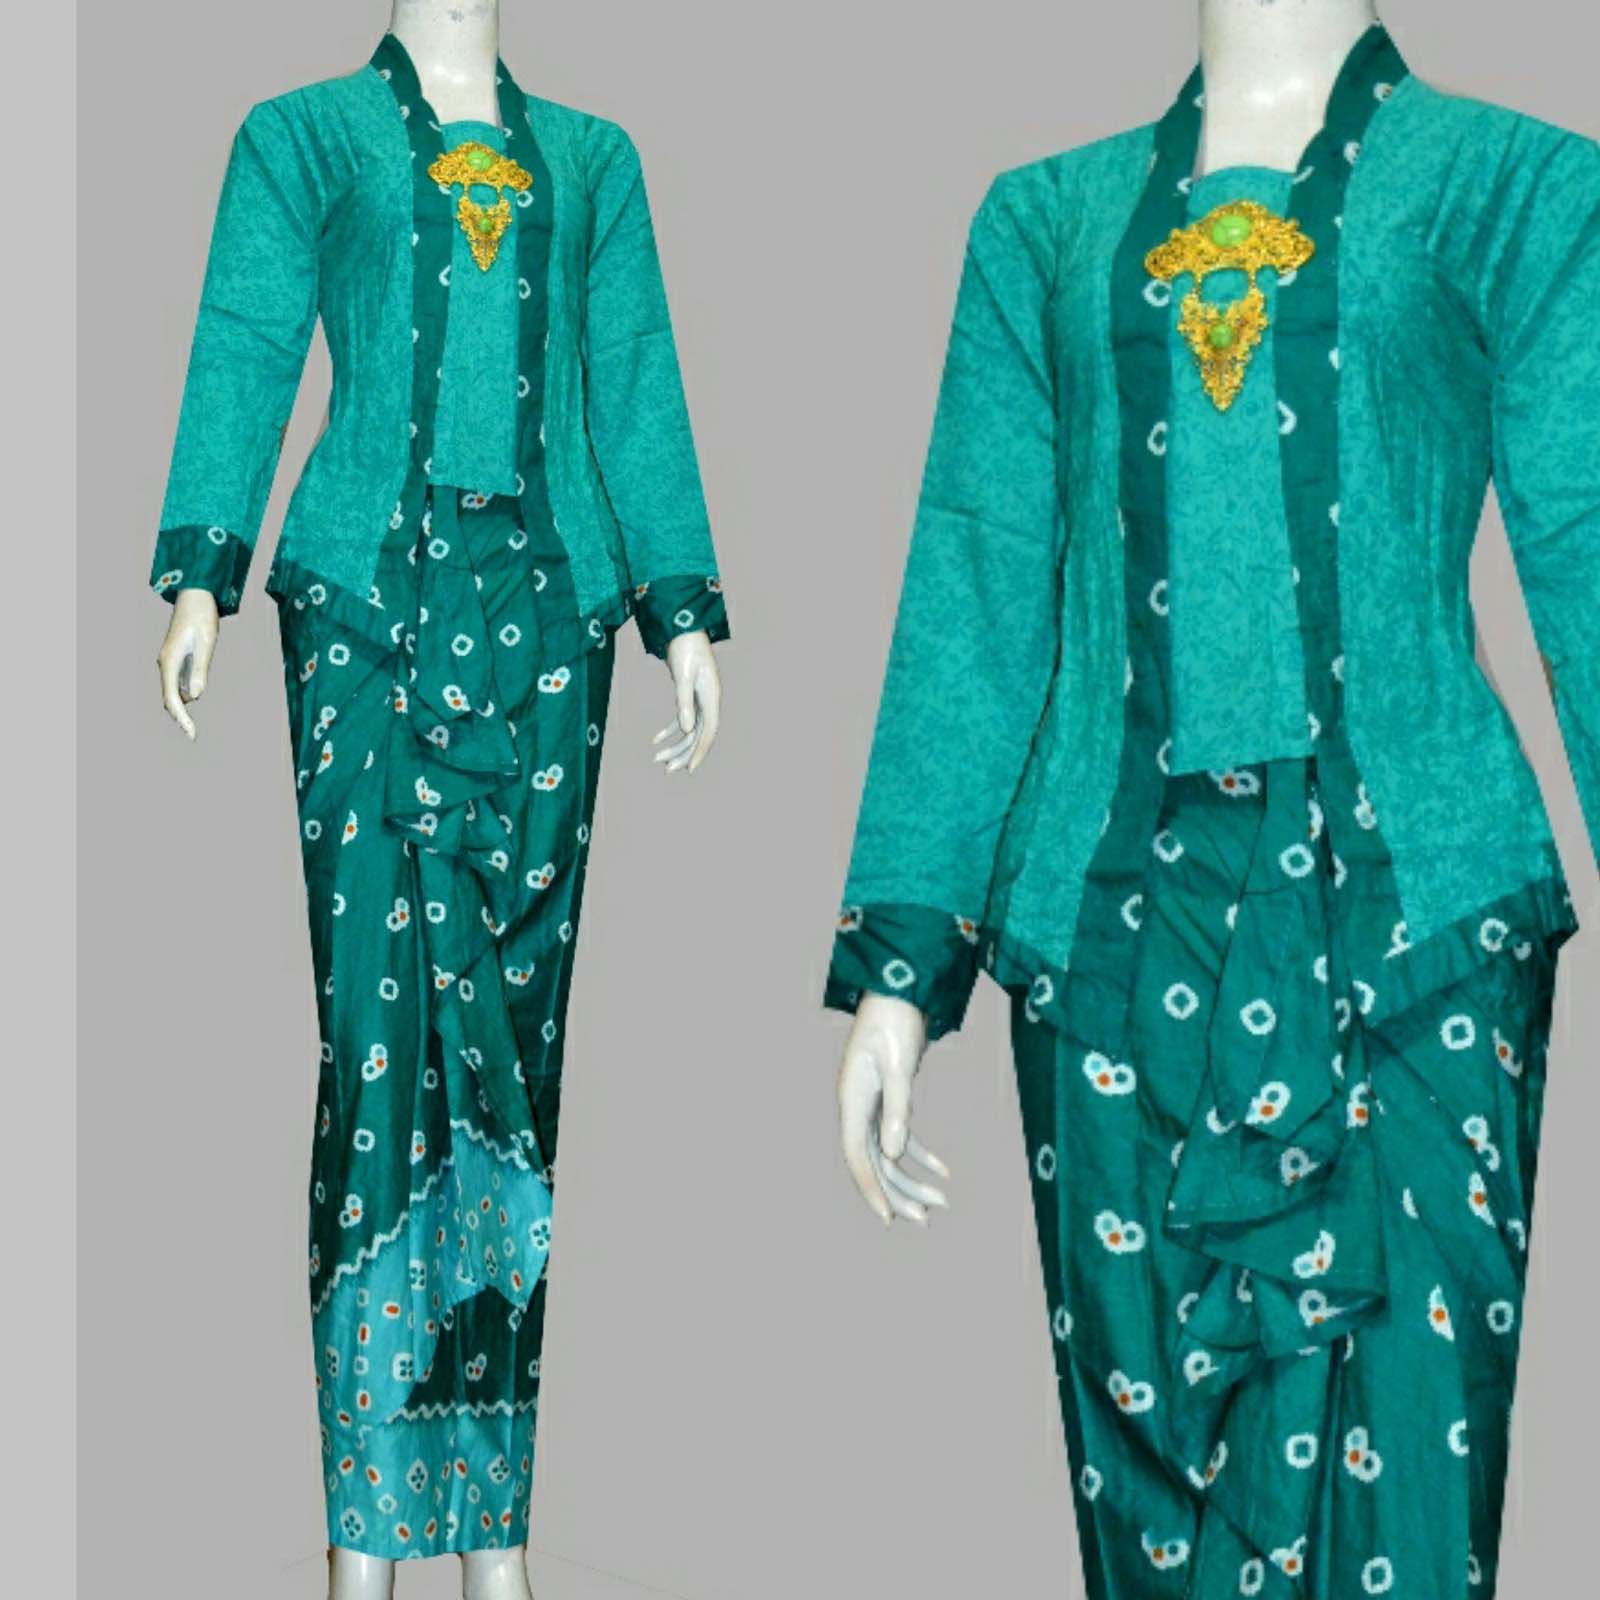  baju kebaya batik kombinasi embos modern 21 model baju 